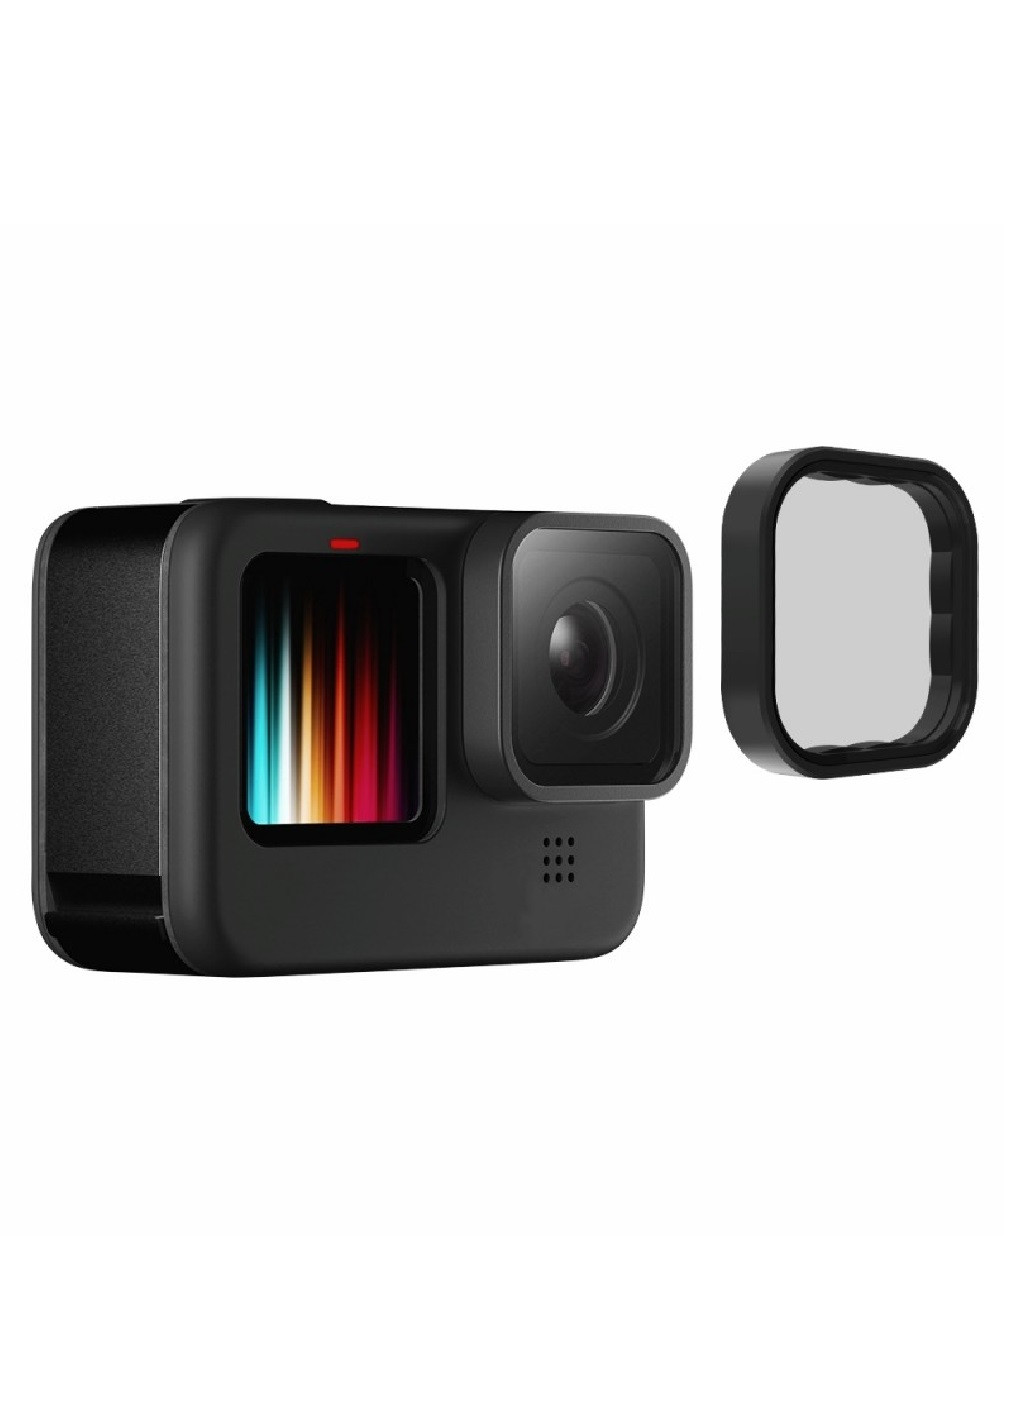 Набор комплект из 3 нейтральных ND светофильтров с коробкой футляром для экшн камер GoPro Hero 9, 10, 11 Black (475049-Prob) Unbranded (260949372)